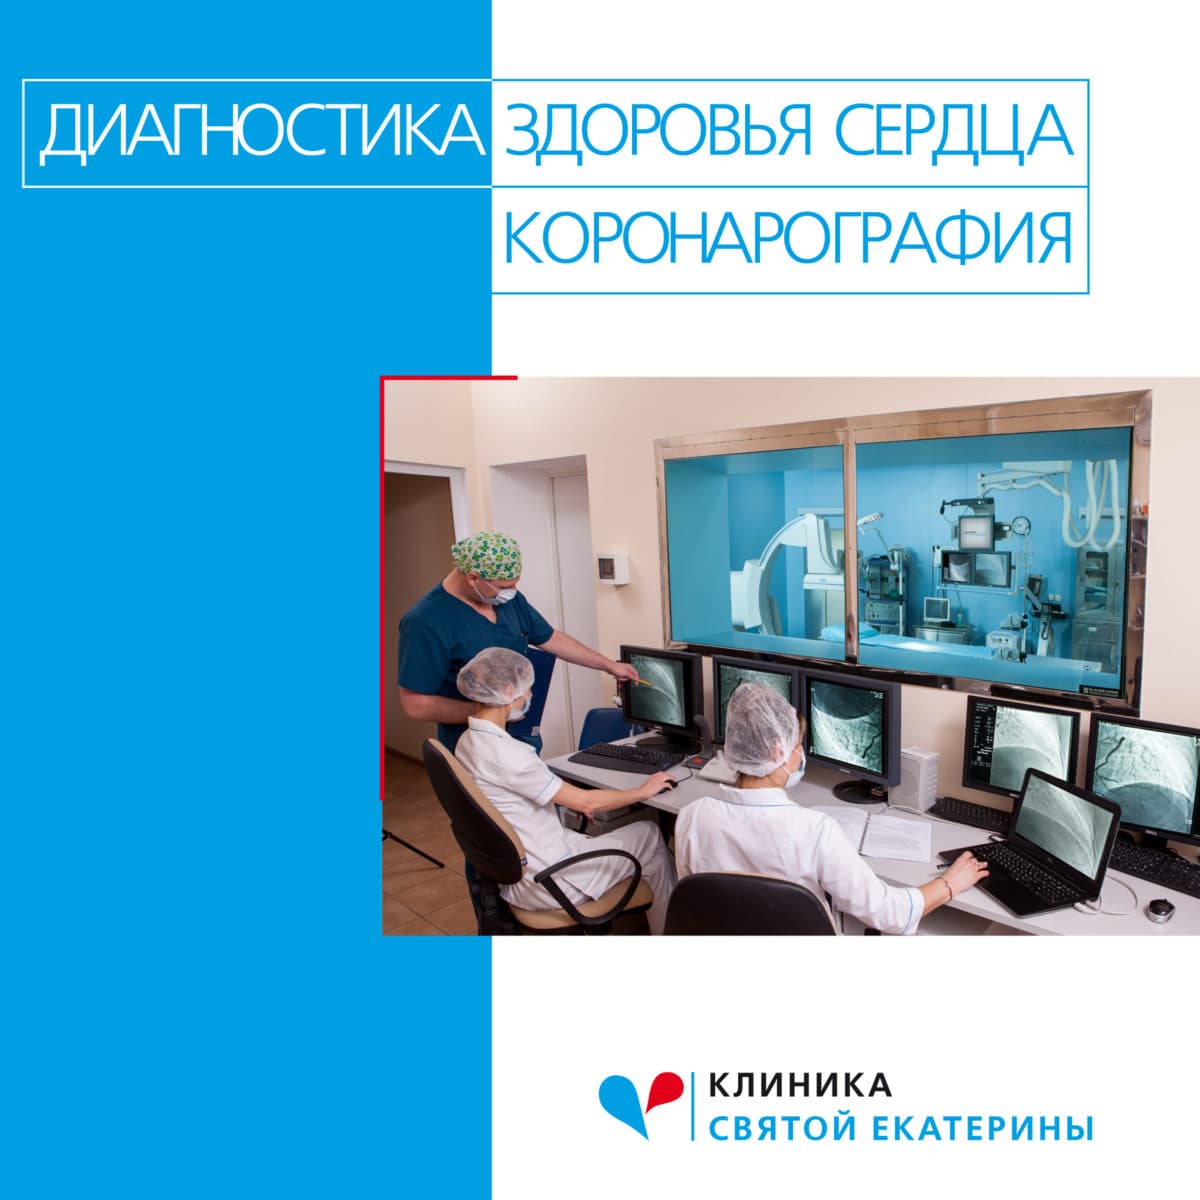 Диагностика здоровья сердца: коронарография - 78 - svekaterina.ua